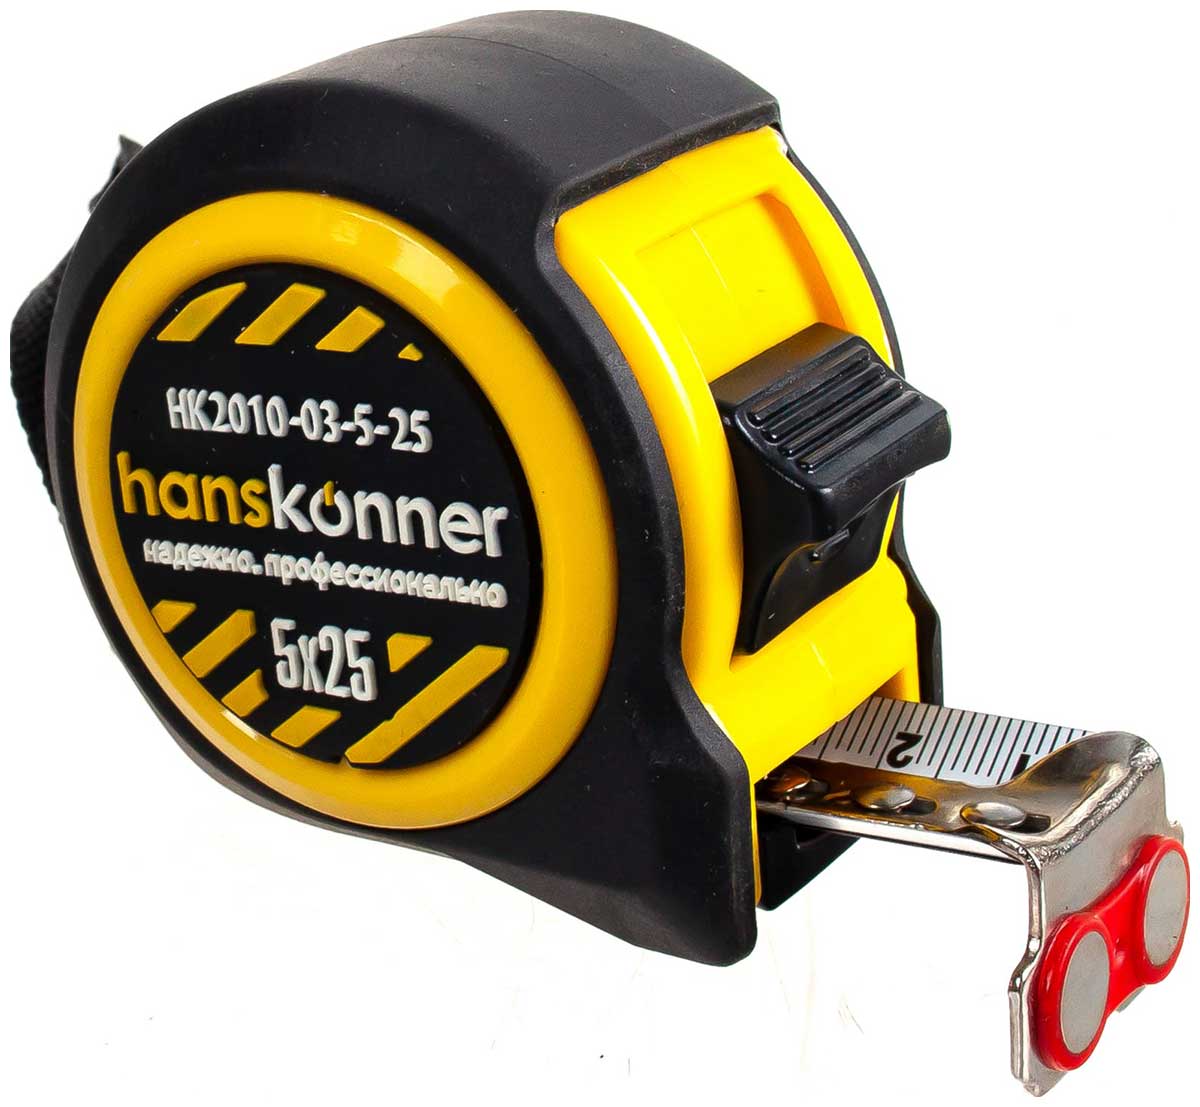 Рулетка Hanskonner HK2010-03-5-25 5x25